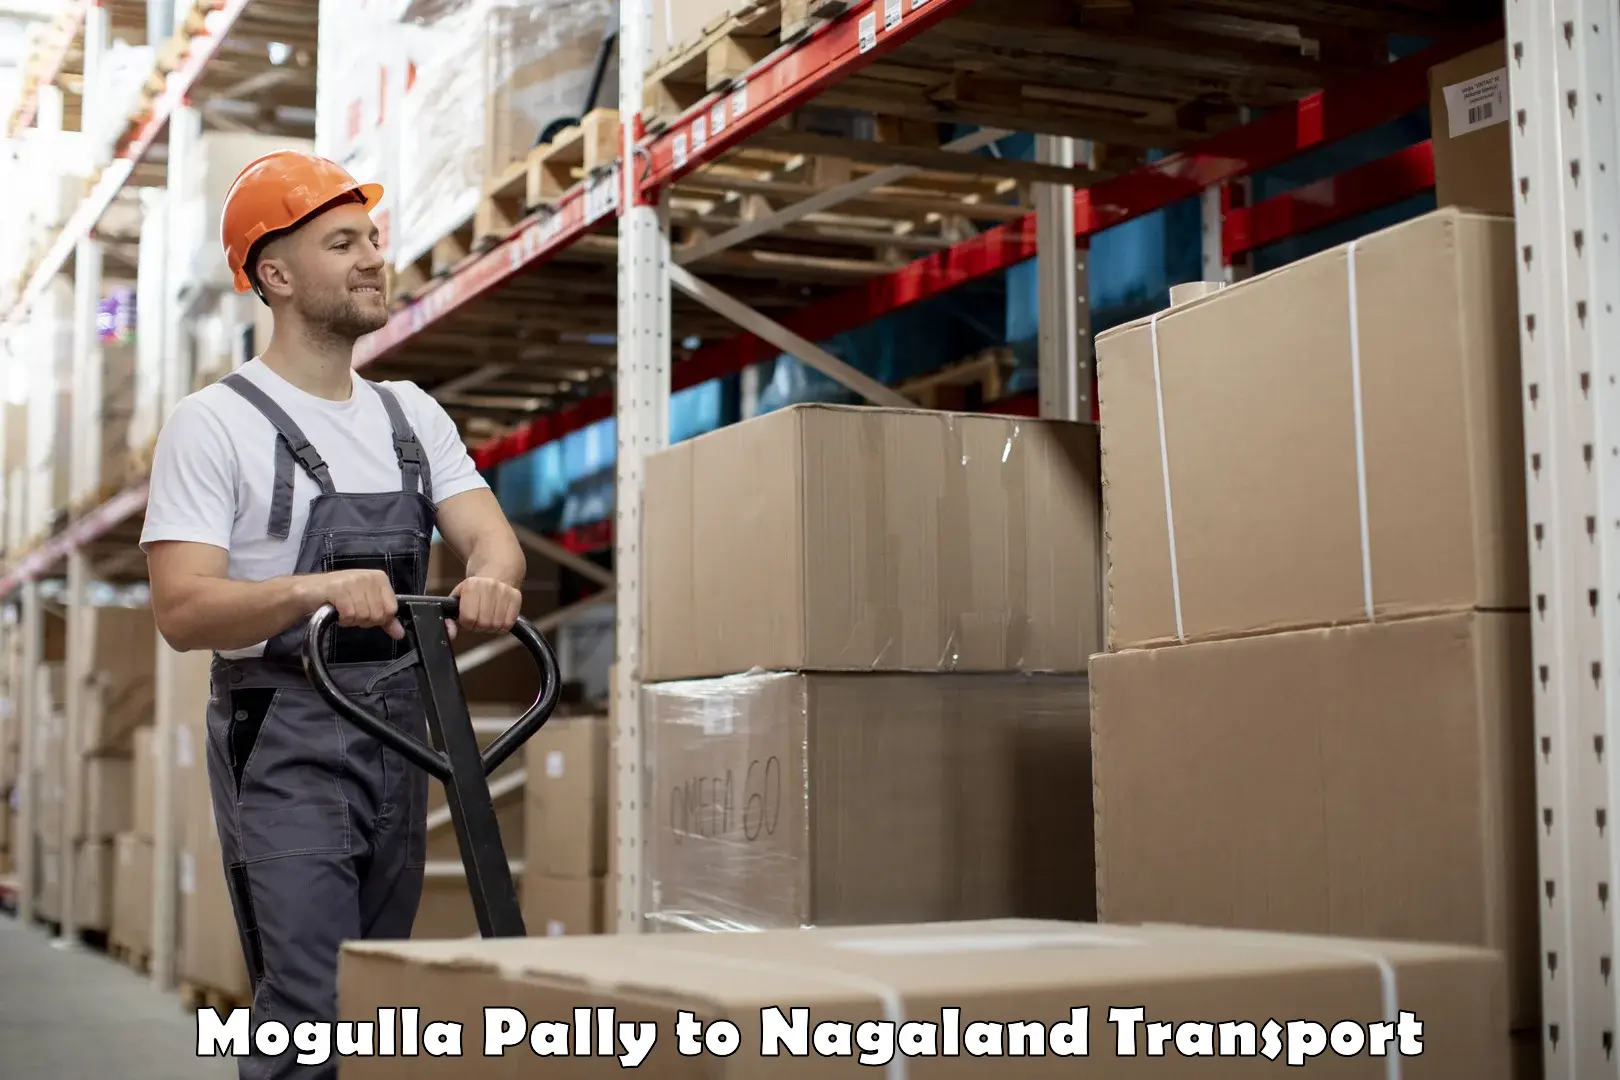 Daily parcel service transport Mogulla Pally to Longleng